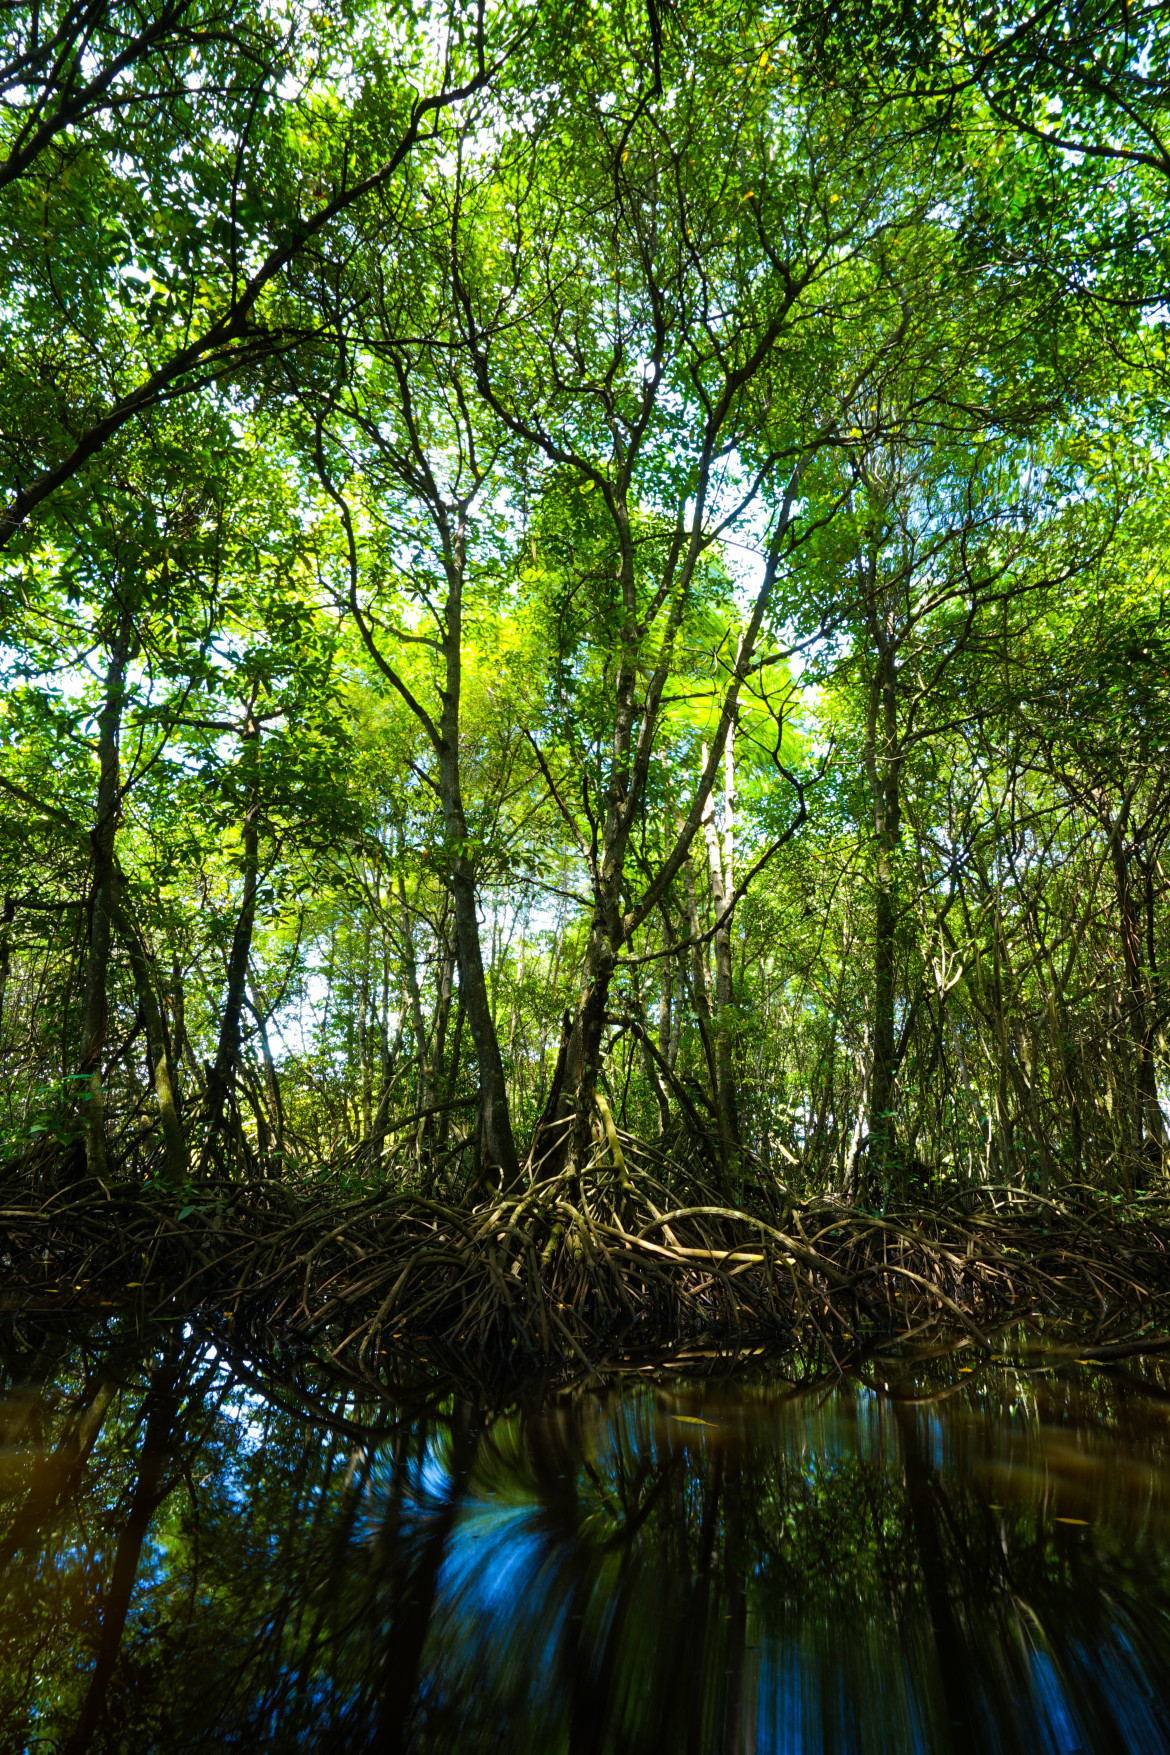 Los manglares pueden medir hasta 30 metros de altura. Foto: Unsplash